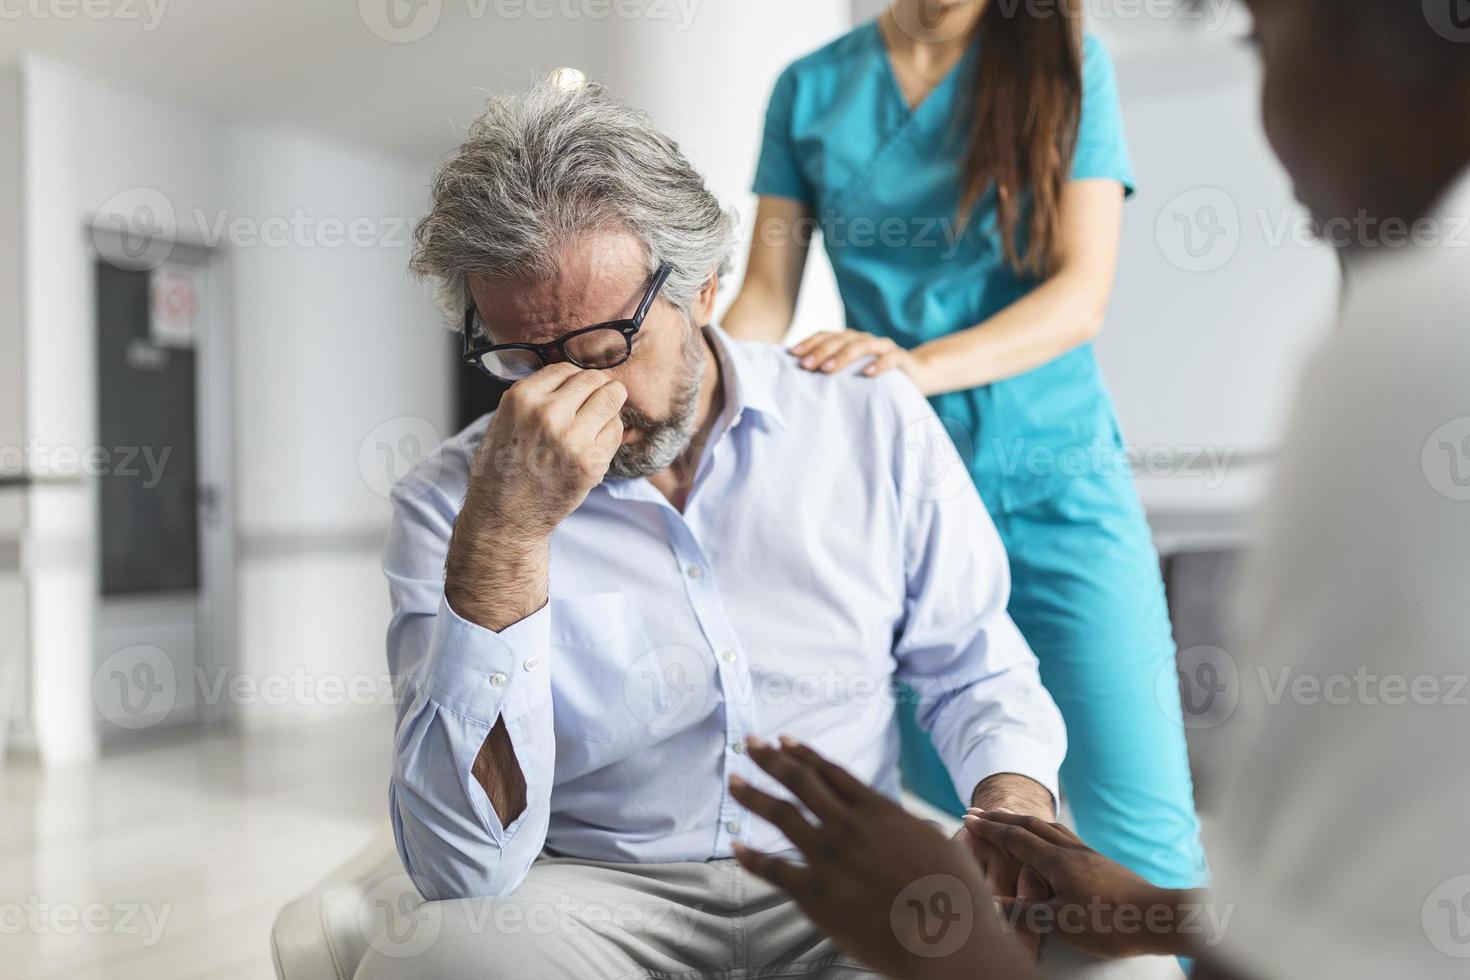 läkare tröstande upprörd man i sjukhus väntar rum. patient tar emot dålig Nyheter, han är desperat och gråt, läkare Stöd och tröstande henne patient med sympati. foto